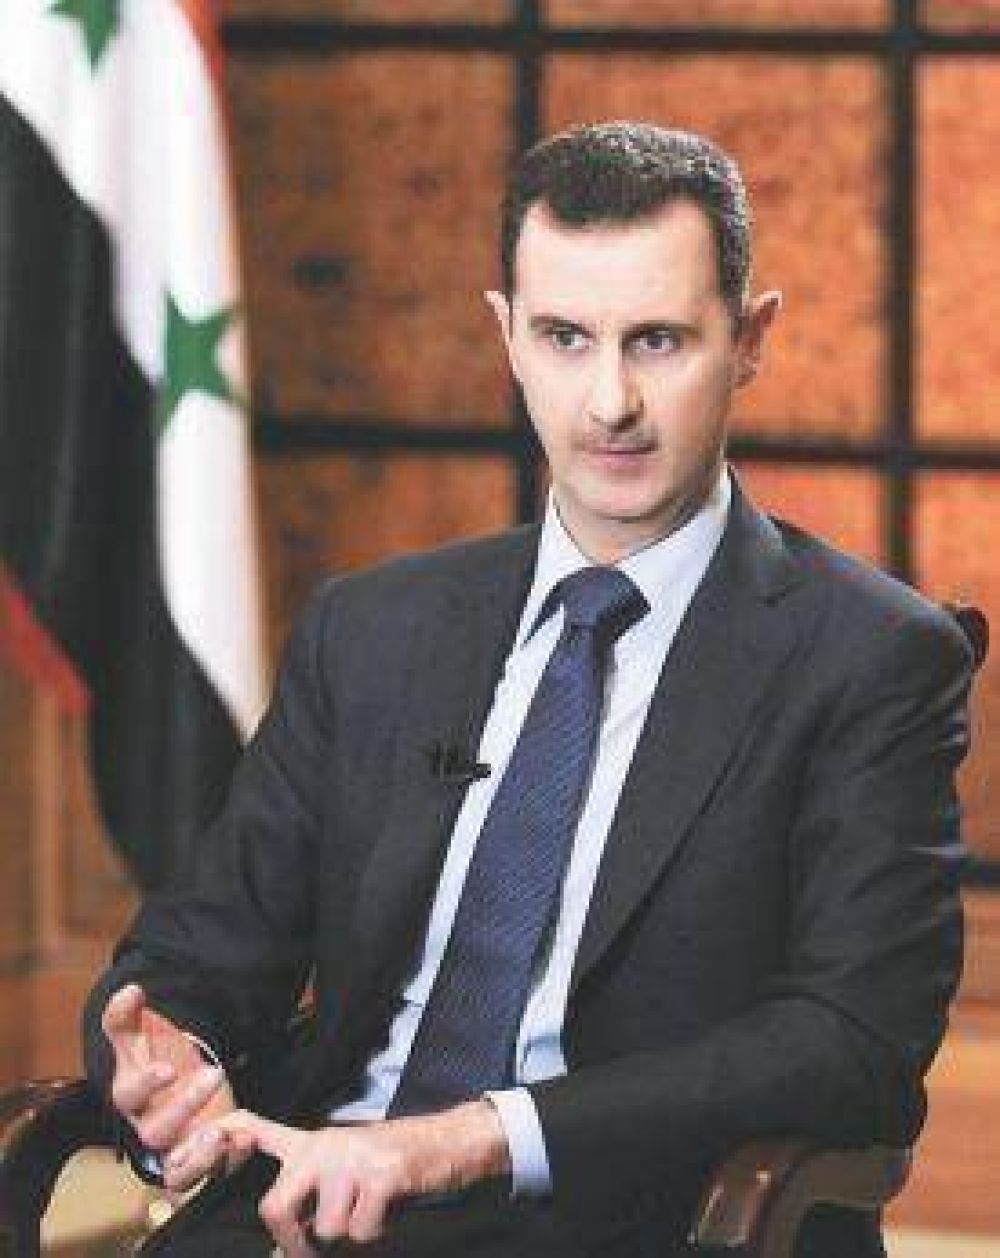 El presidente Al Assad no descart un ataque de pases occidentales a Siria